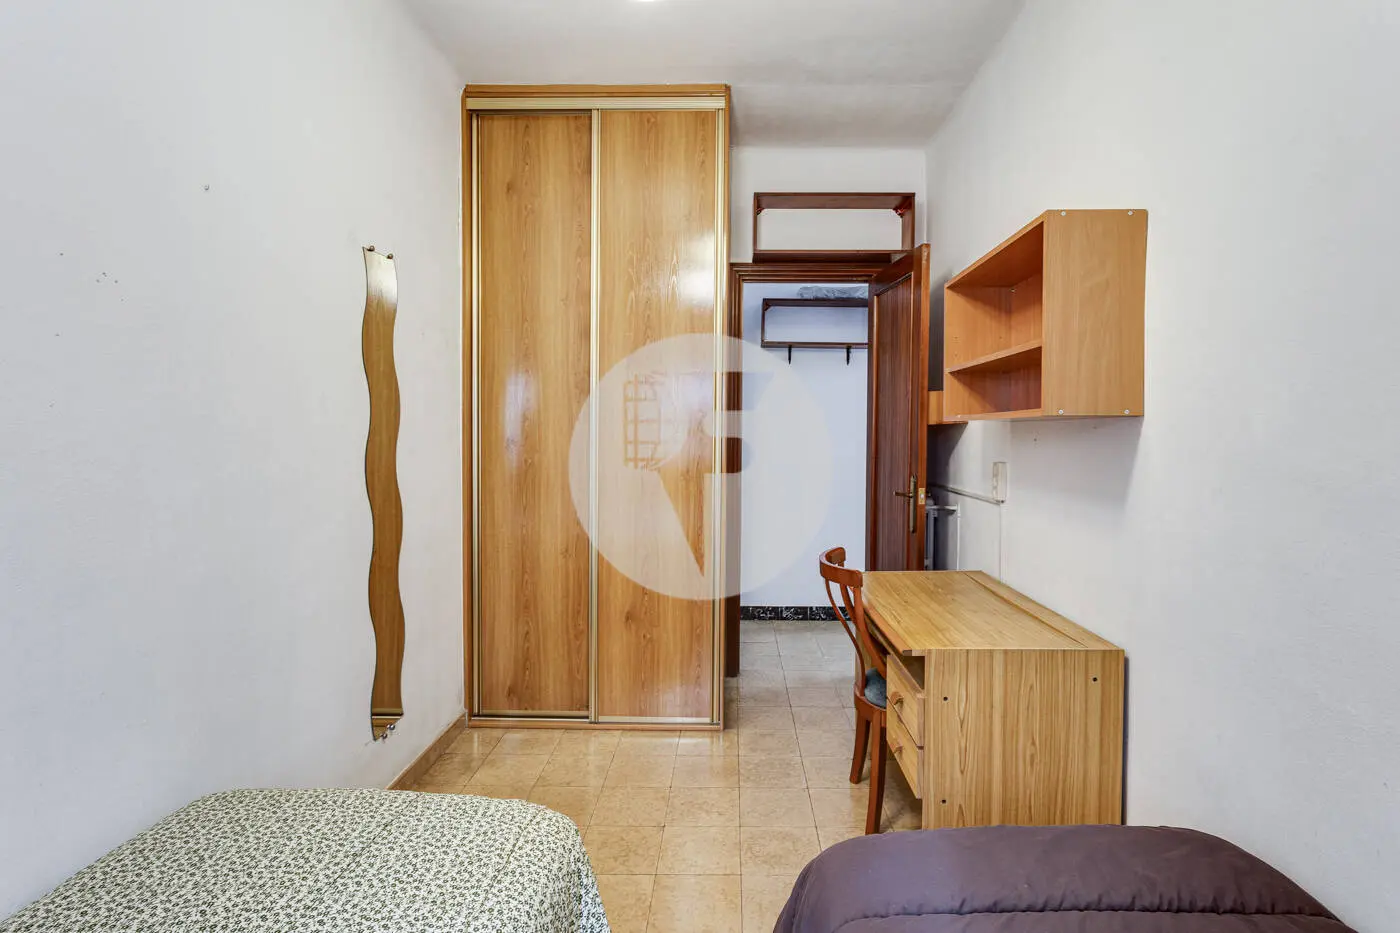 Piso de 3 habitaciones ubicado en el barrio de la Nova Esquerra de l'Eixample de Barcelona. 24